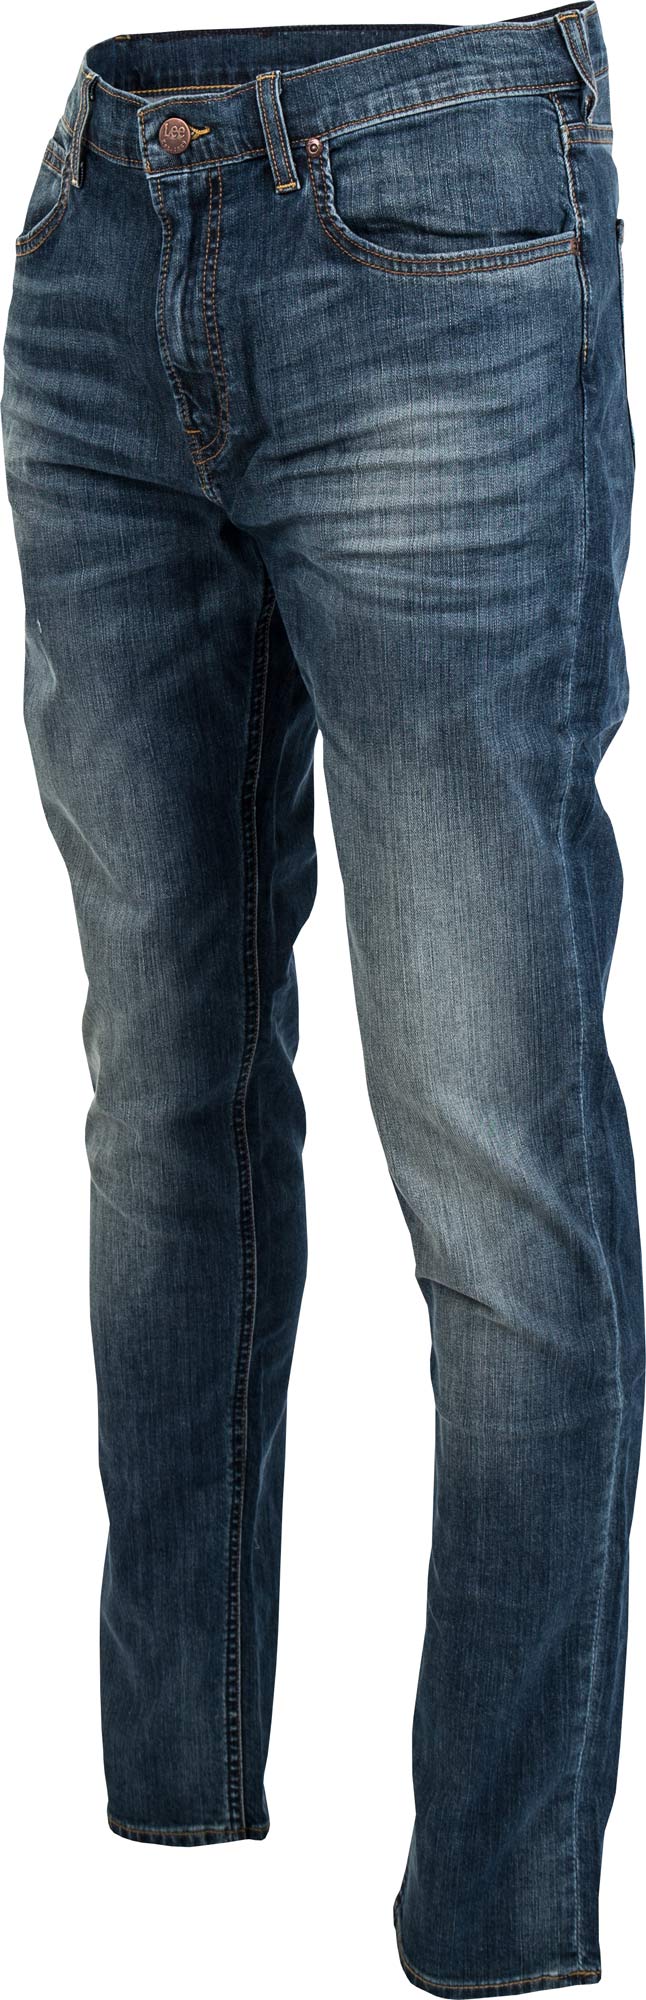 ARVIN BLUE RYTHYM - Pánské jeansy